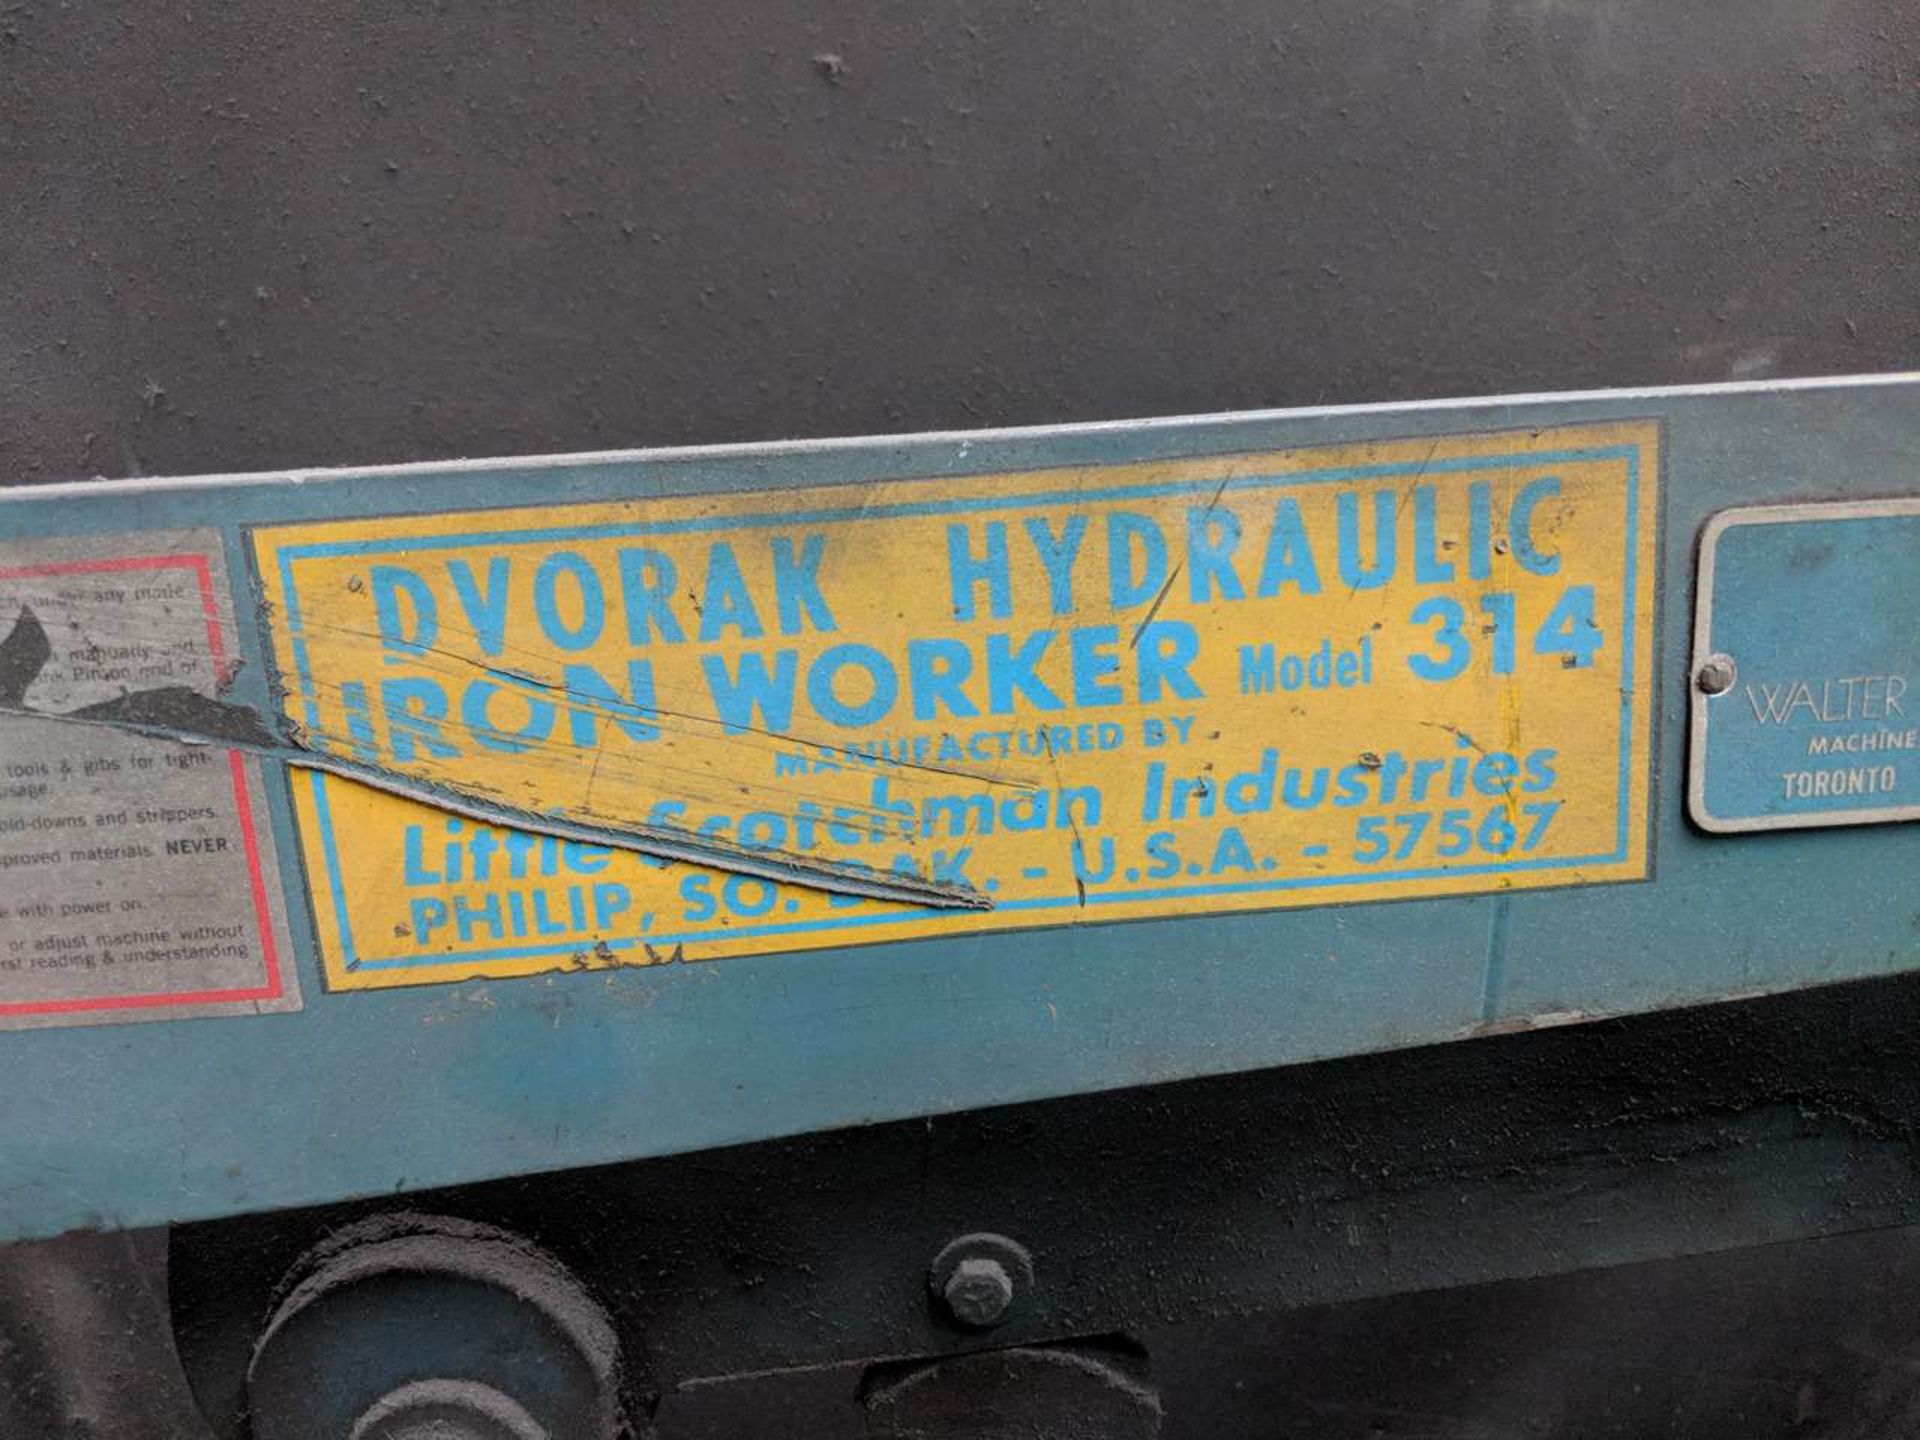 Scotchman Dvorak 314 Hyrdaulic Iron Worker - Image 2 of 2